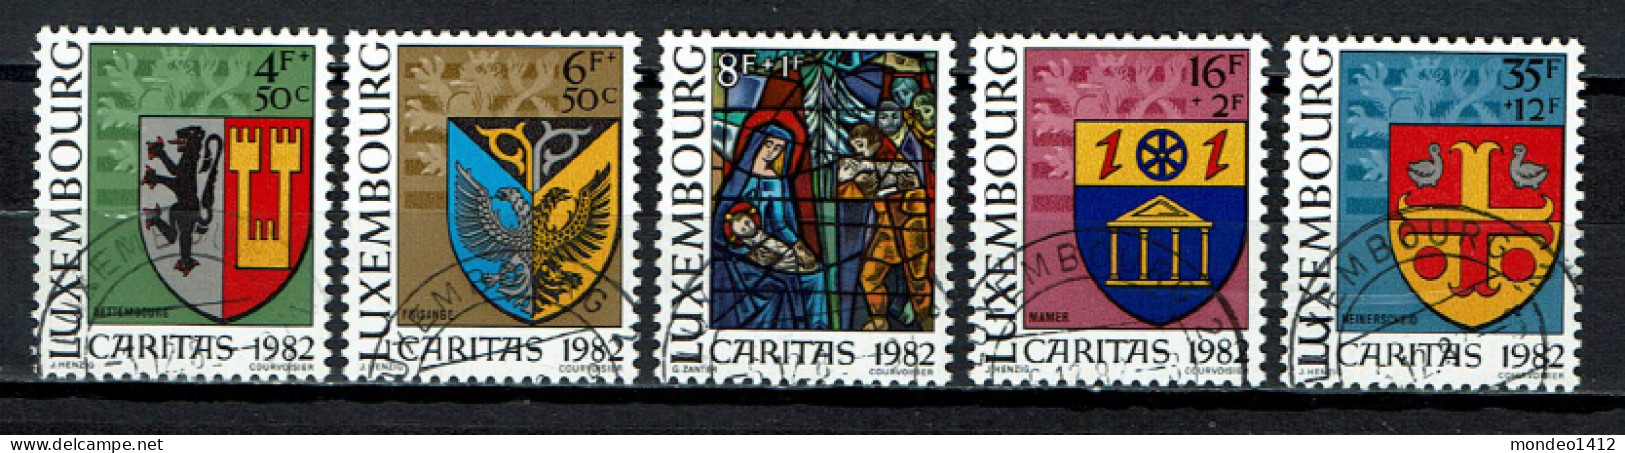 Luxembourg 1982 - YT 1013/1017 - Town Arms - Caritas Issue, Armoiries Communales Et Vitrail, Wappenschilde - Oblitérés